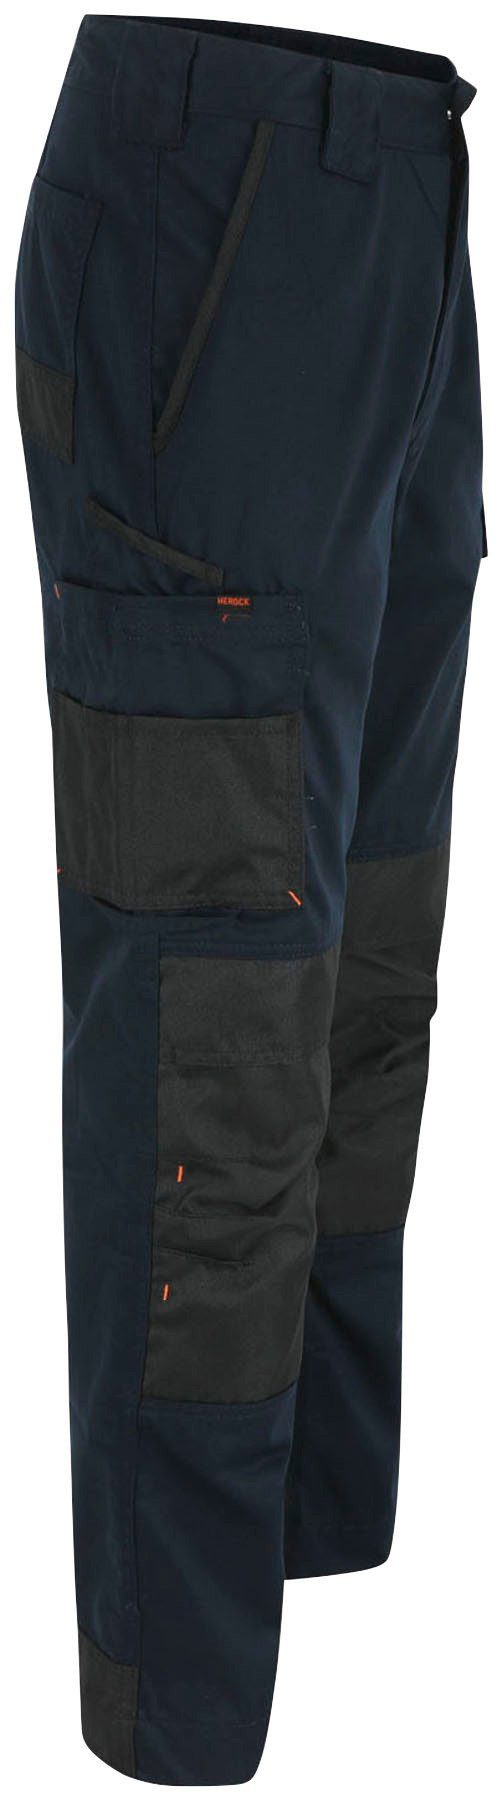 Herock bequem, Hose marine Mars und Leicht wasserabweisend, angenehme Passform Arbeitshose Taschen, 10